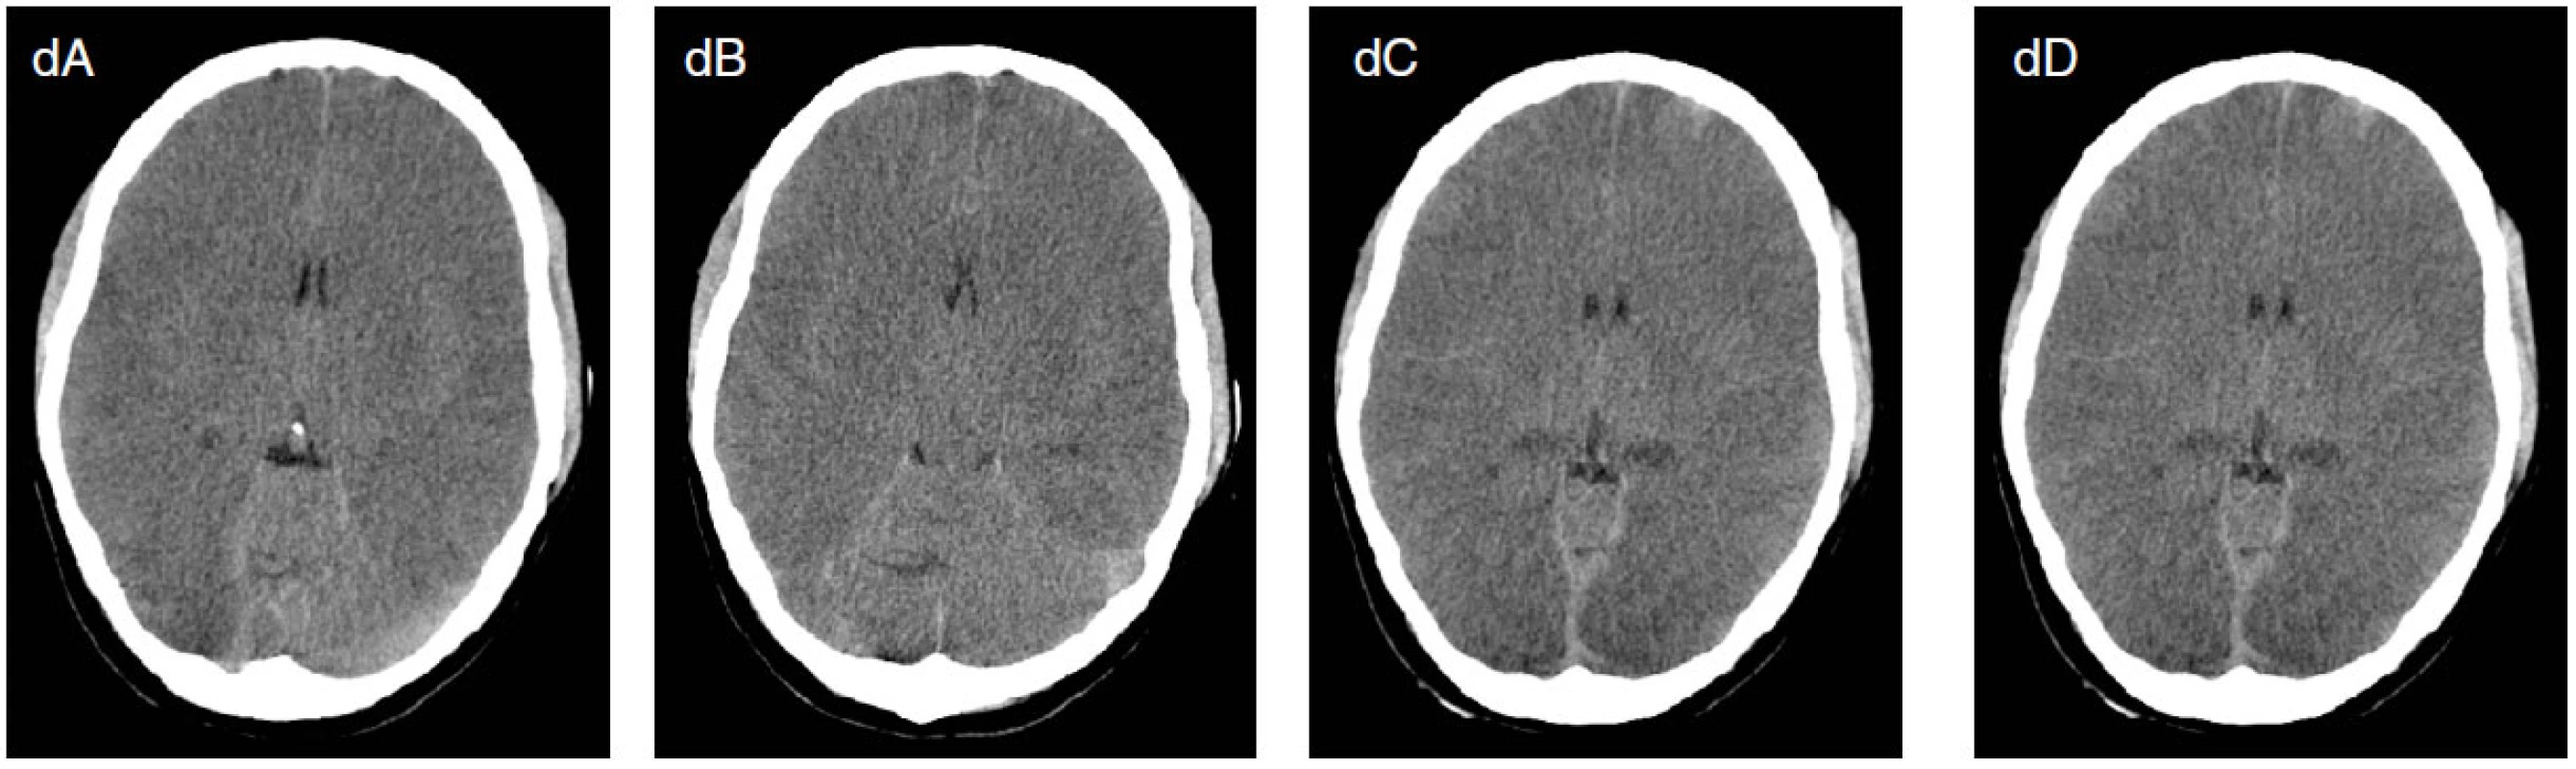 Osmnáctiletá pacientka byla přijata po KPCR po otravě oxidem uhelnatým a topení ve vaně. Od přijetí v těžkém kómatu. Na EEG jsou přítomny suspektní, lokalizačně měnlivé iktální vzorce (šipky na obrázcích a, b), které vymizí po aplikaci DZP (c). Na CT mozku je přítomen těžký otok mozku (d). Pacientka umírá za měsíc za příznaků multiorgánového selhání.